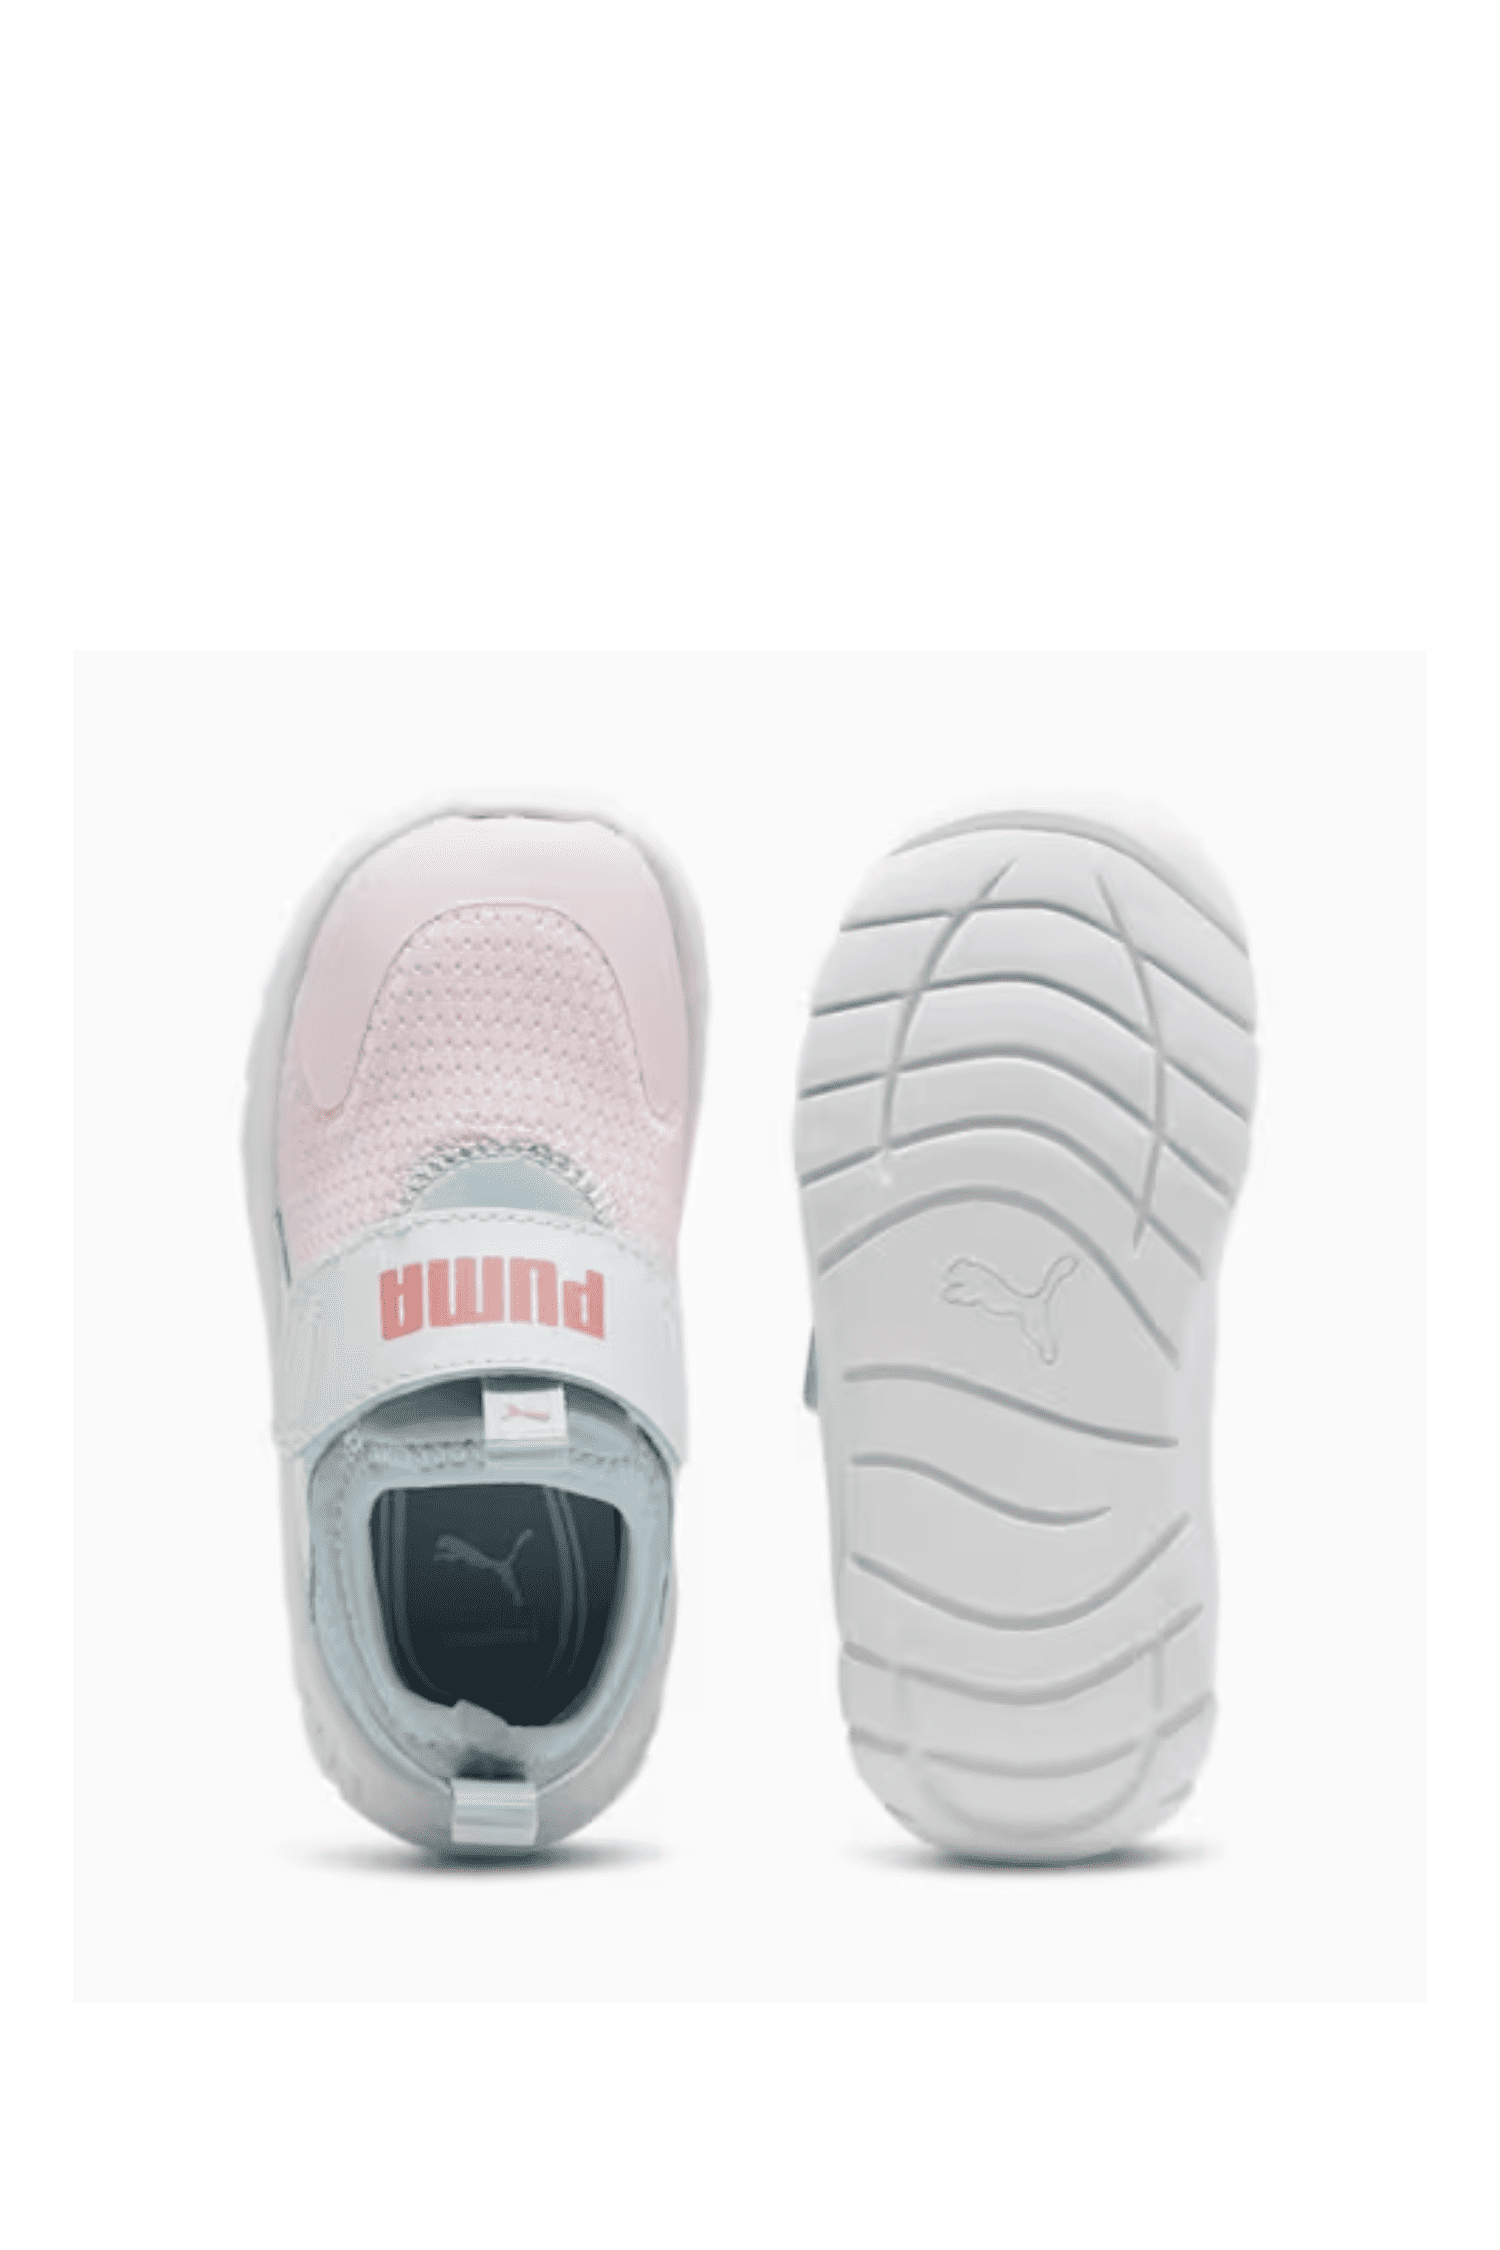 נעלי פומה תינוקות Puma Evolve Slip On Inf בצבע ורוד-Puma-20-נאקו